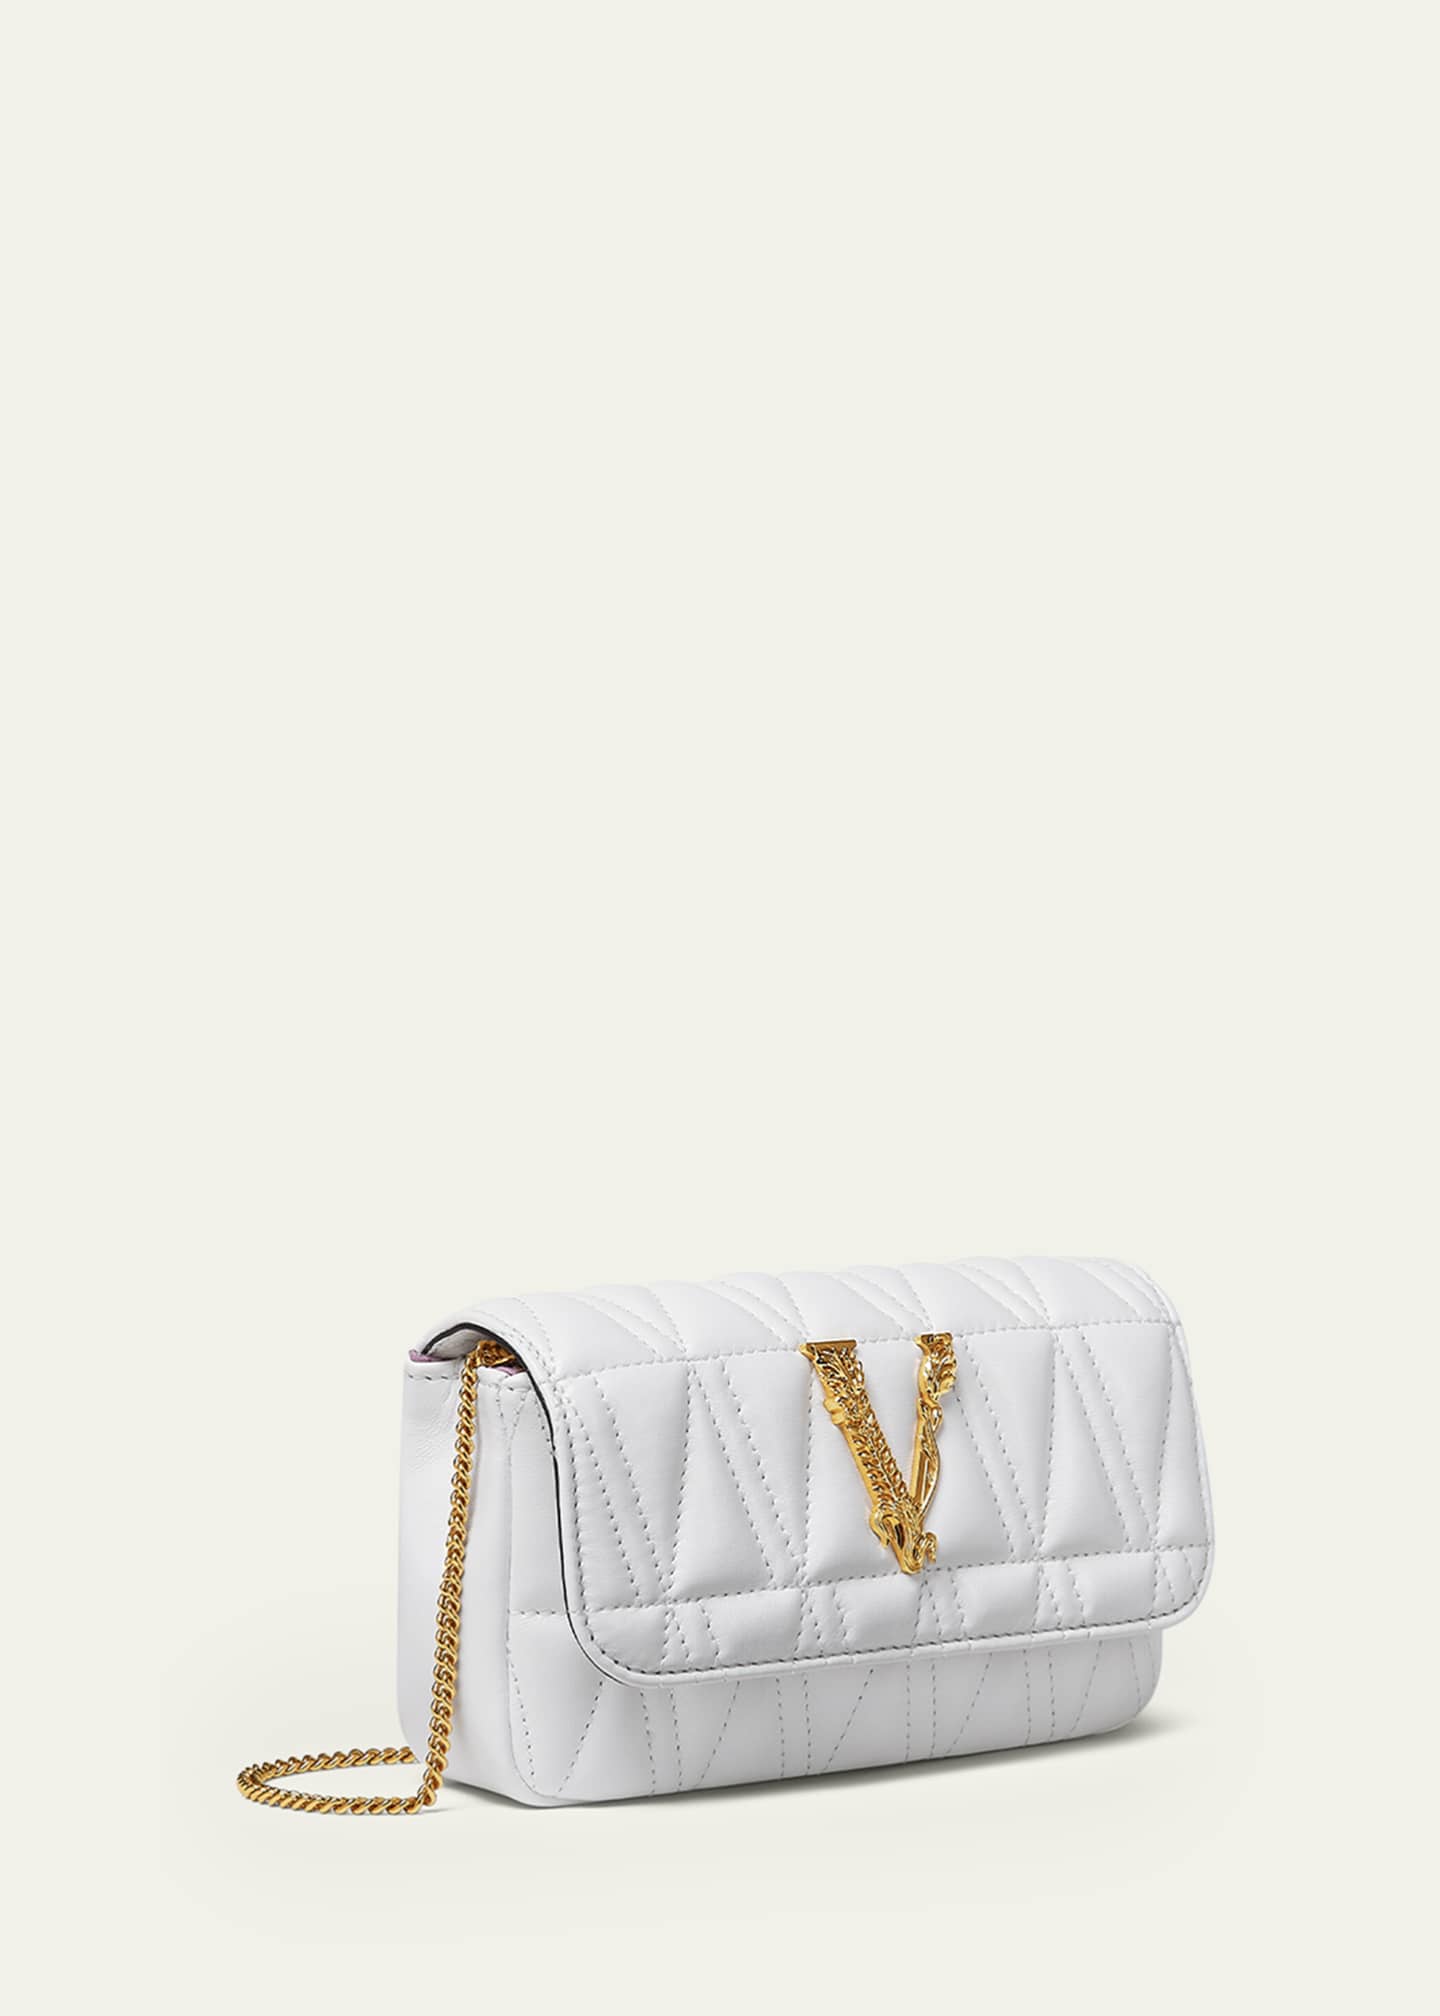 Versace Virtus Shoulder Bag for Women